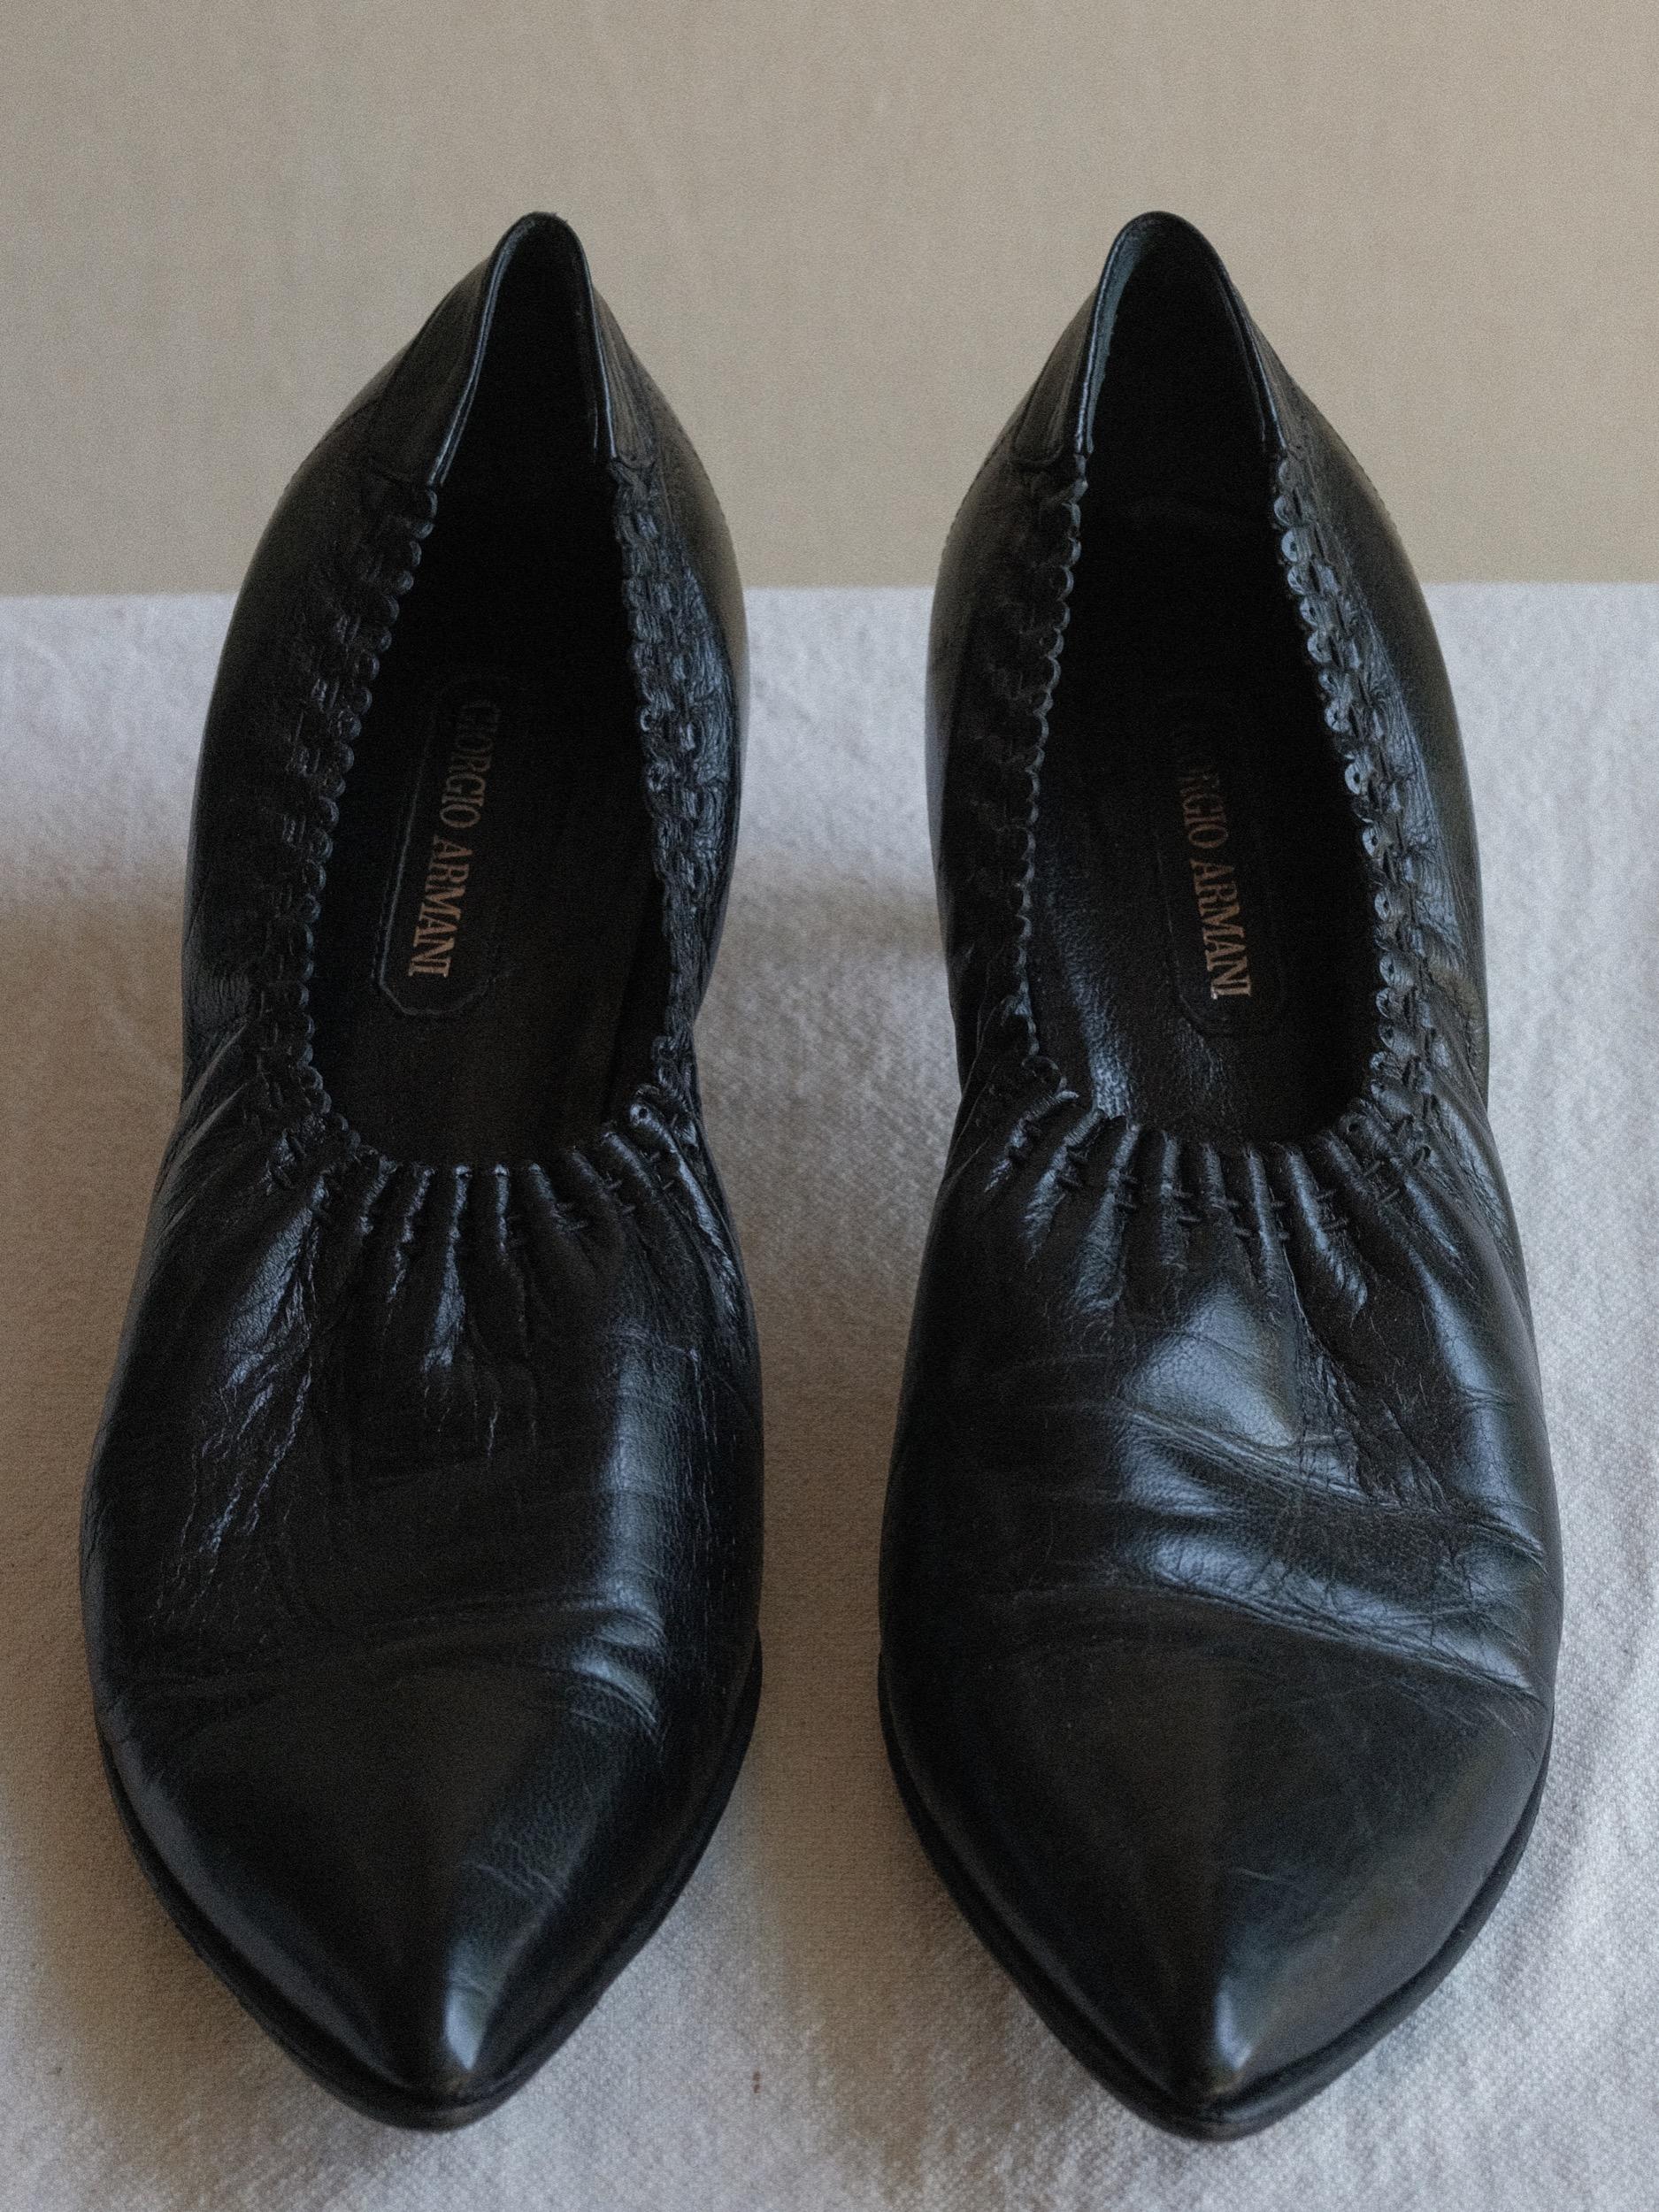 Giorgio Armani Black Leather Pointed Pumps circa 2001 Size 39 1/2 For Sale 4